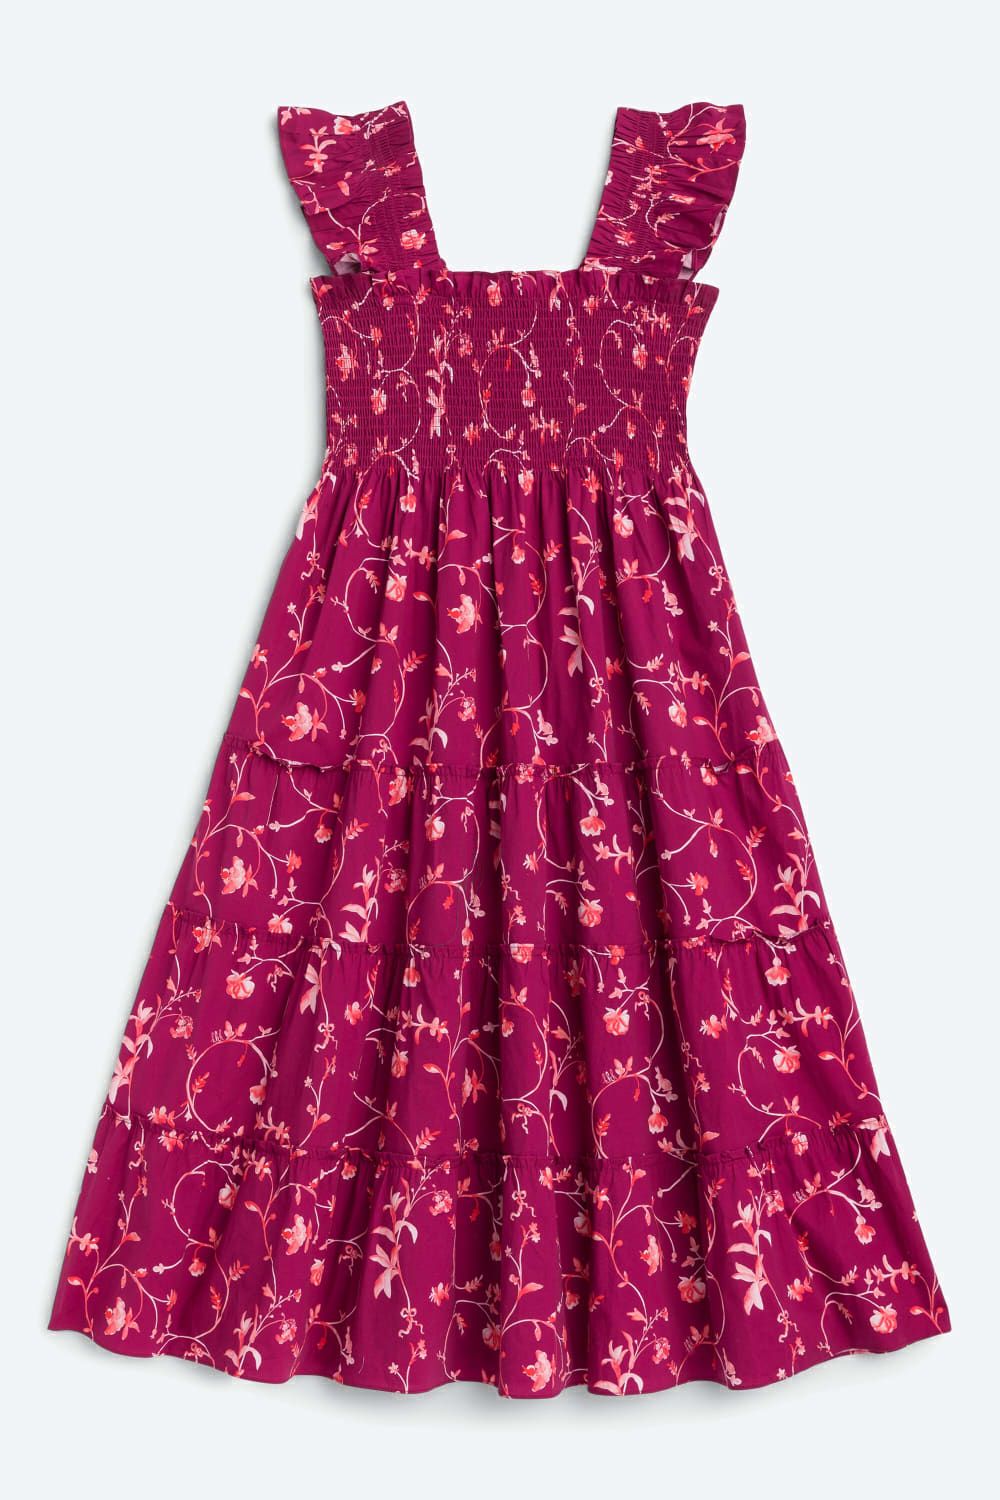 Ellie Nap Dress | Stitch Fix